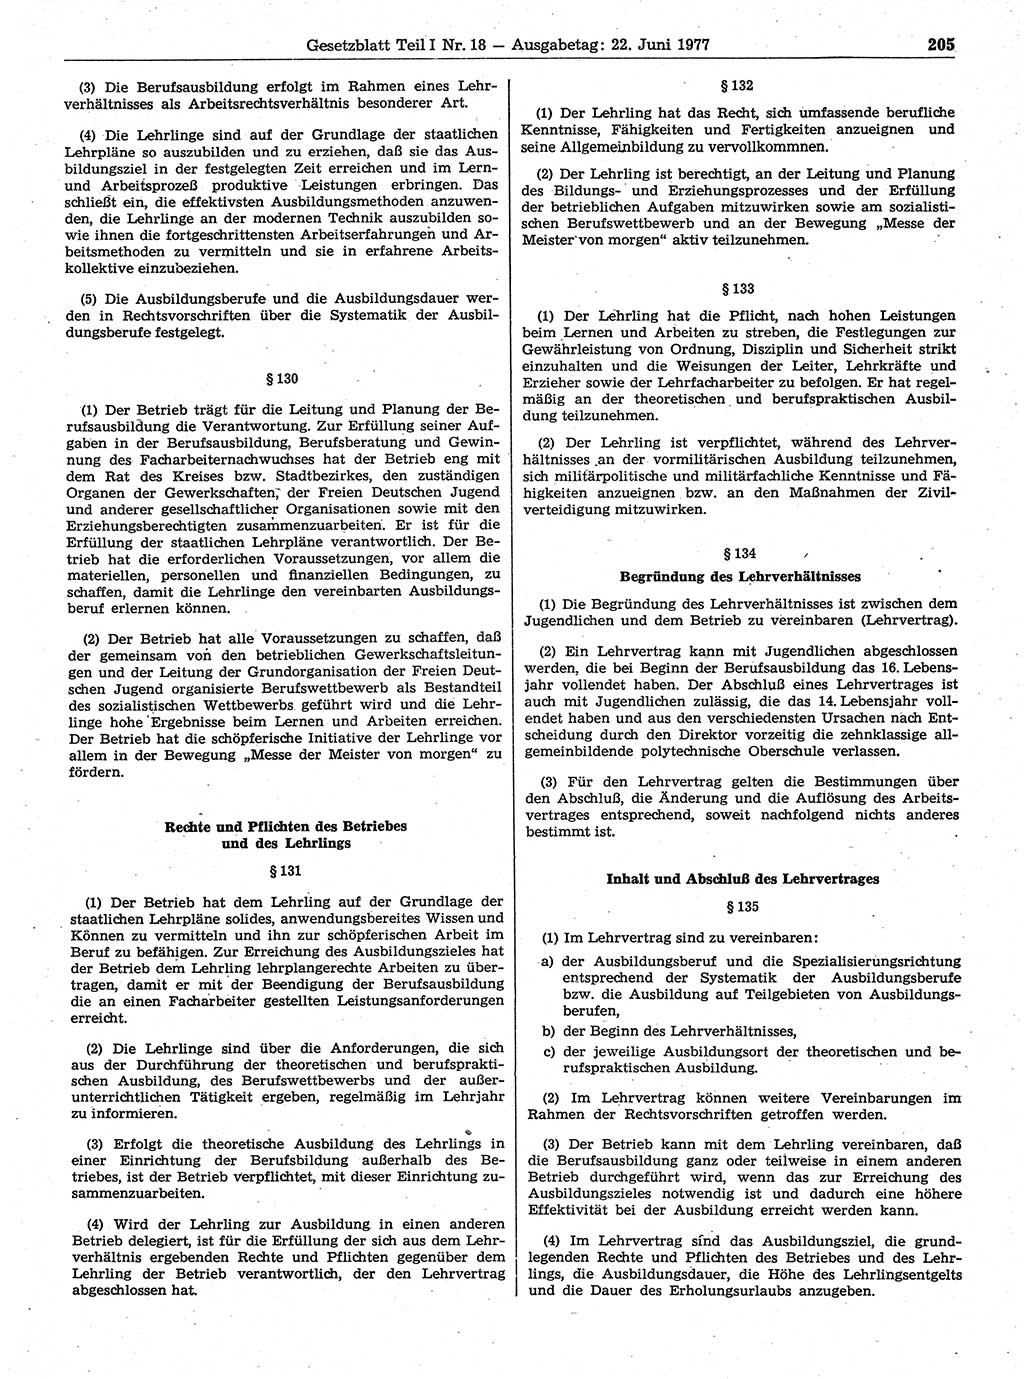 Gesetzblatt (GBl.) der Deutschen Demokratischen Republik (DDR) Teil Ⅰ 1977, Seite 205 (GBl. DDR Ⅰ 1977, S. 205)